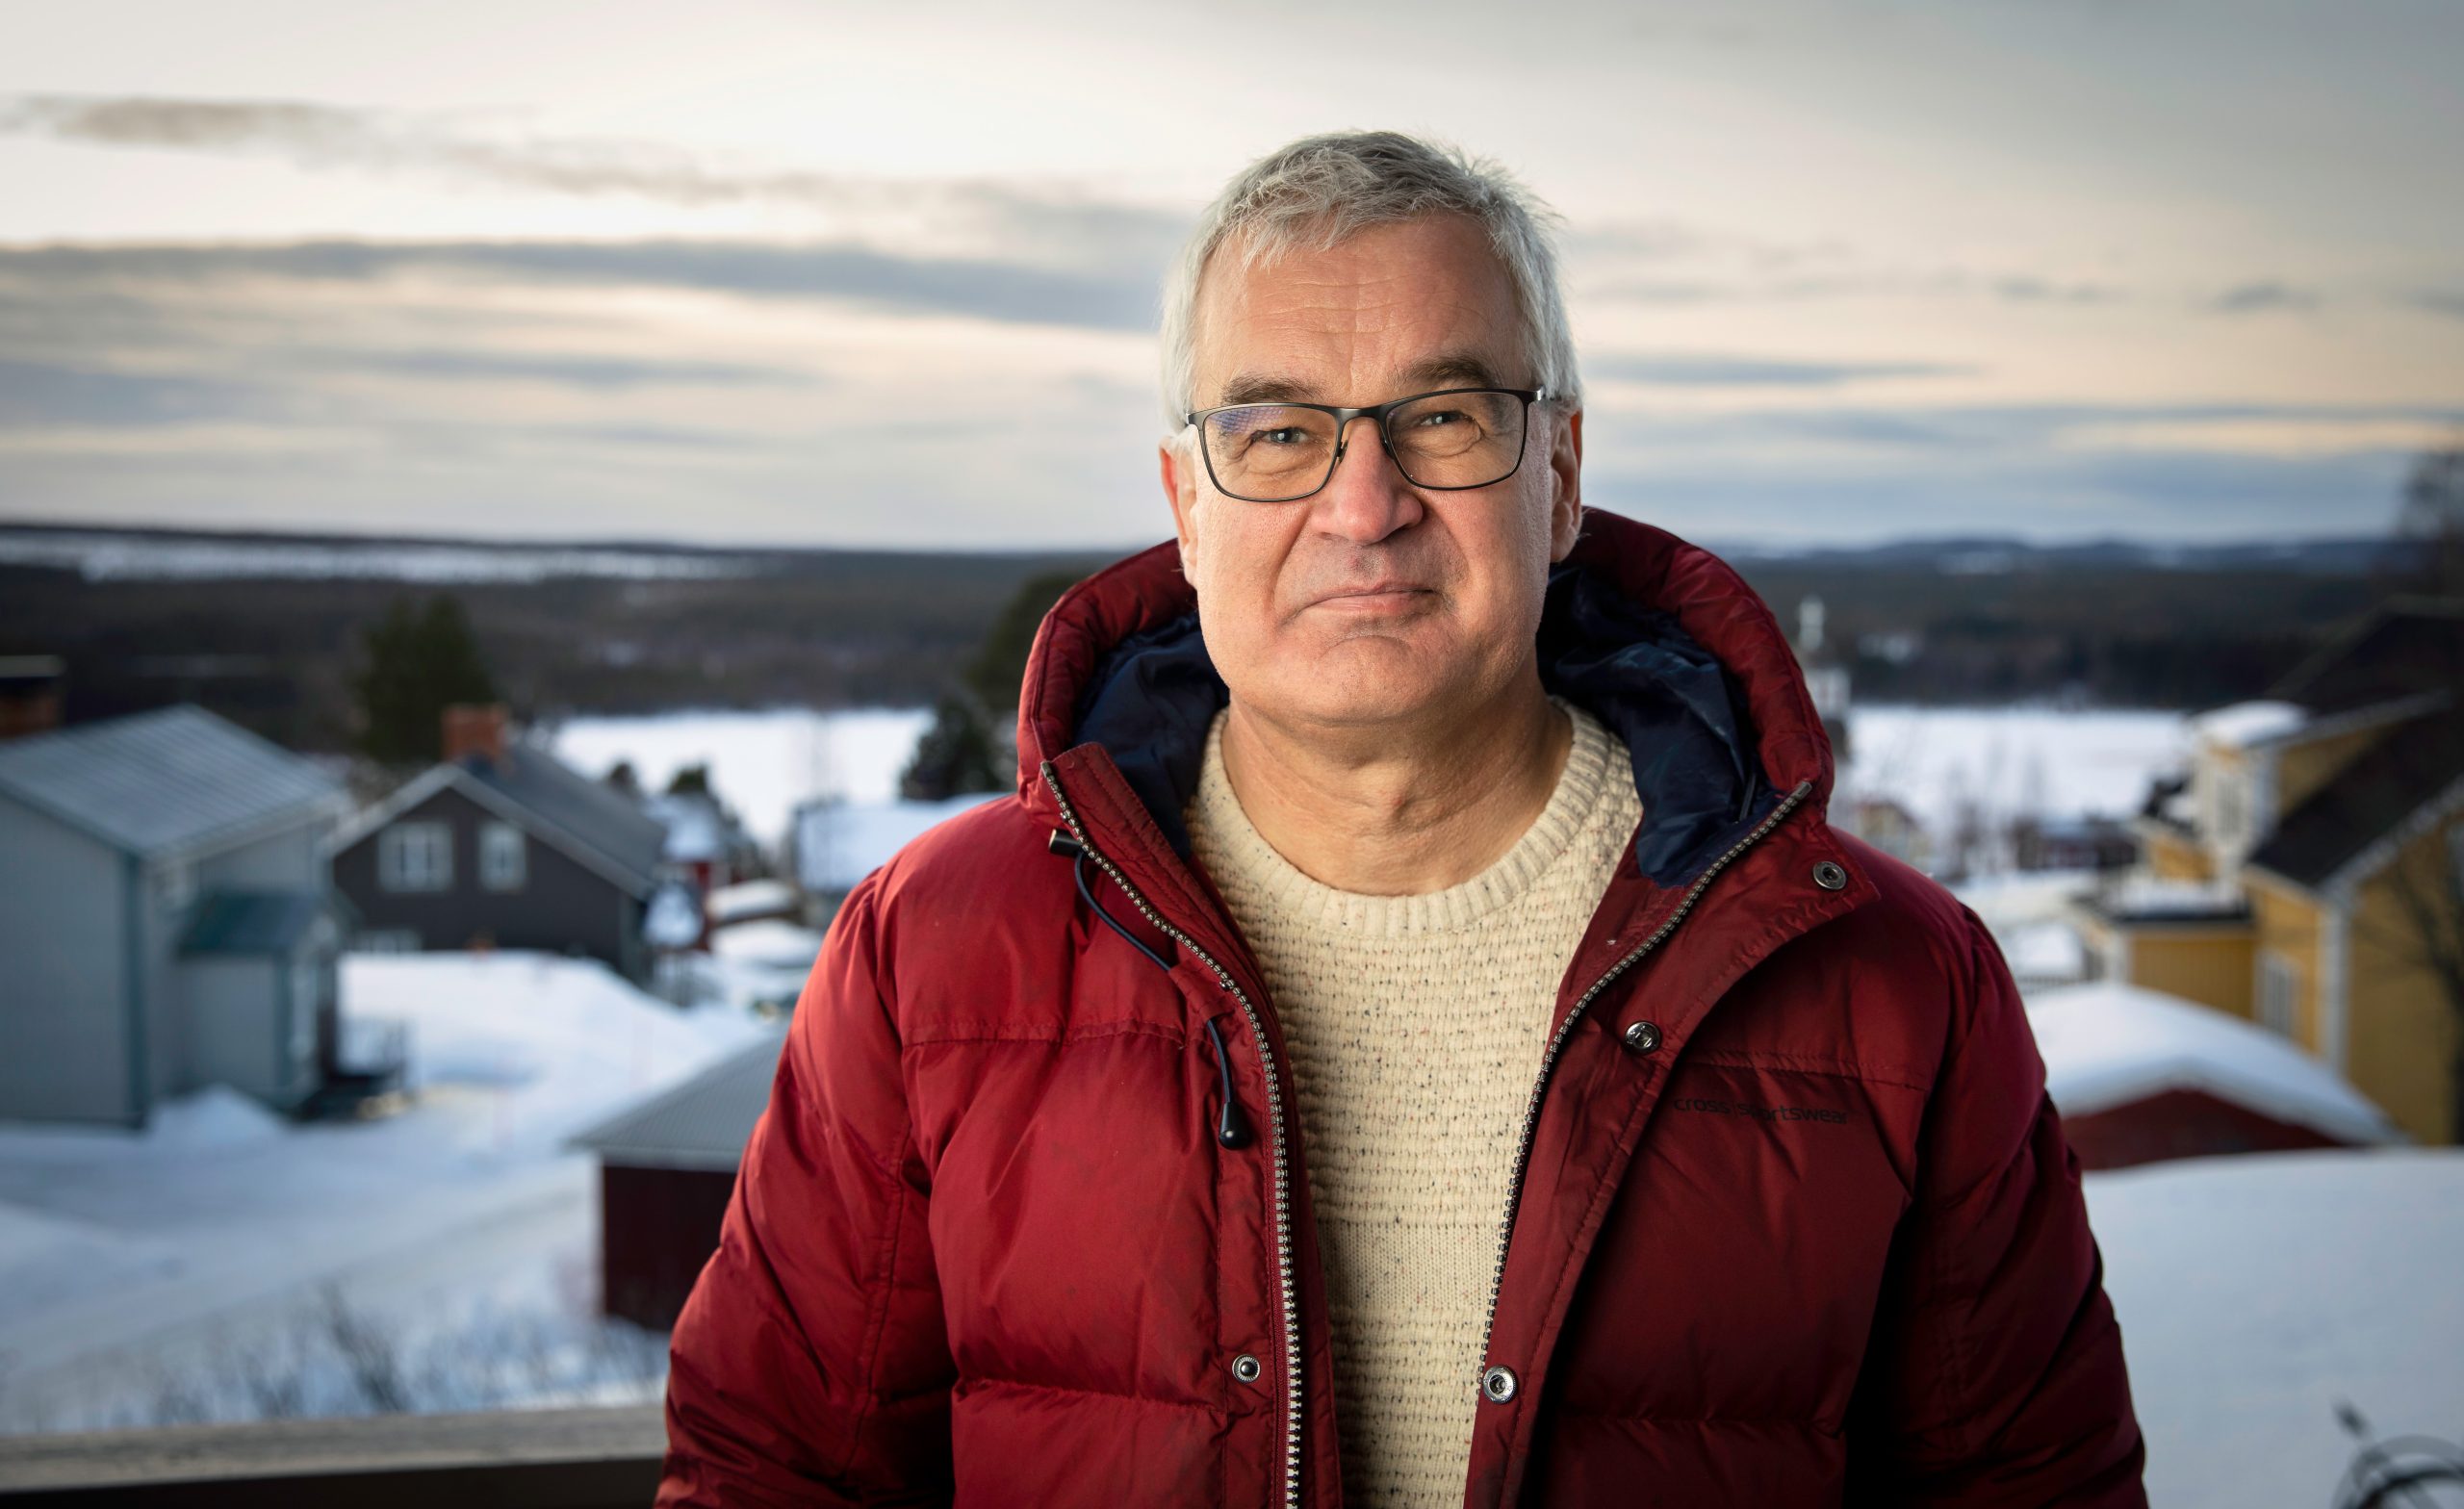 Lars Blixt tittar in i kameran i röd jacka framför en suddig bakgrund av hus och snö